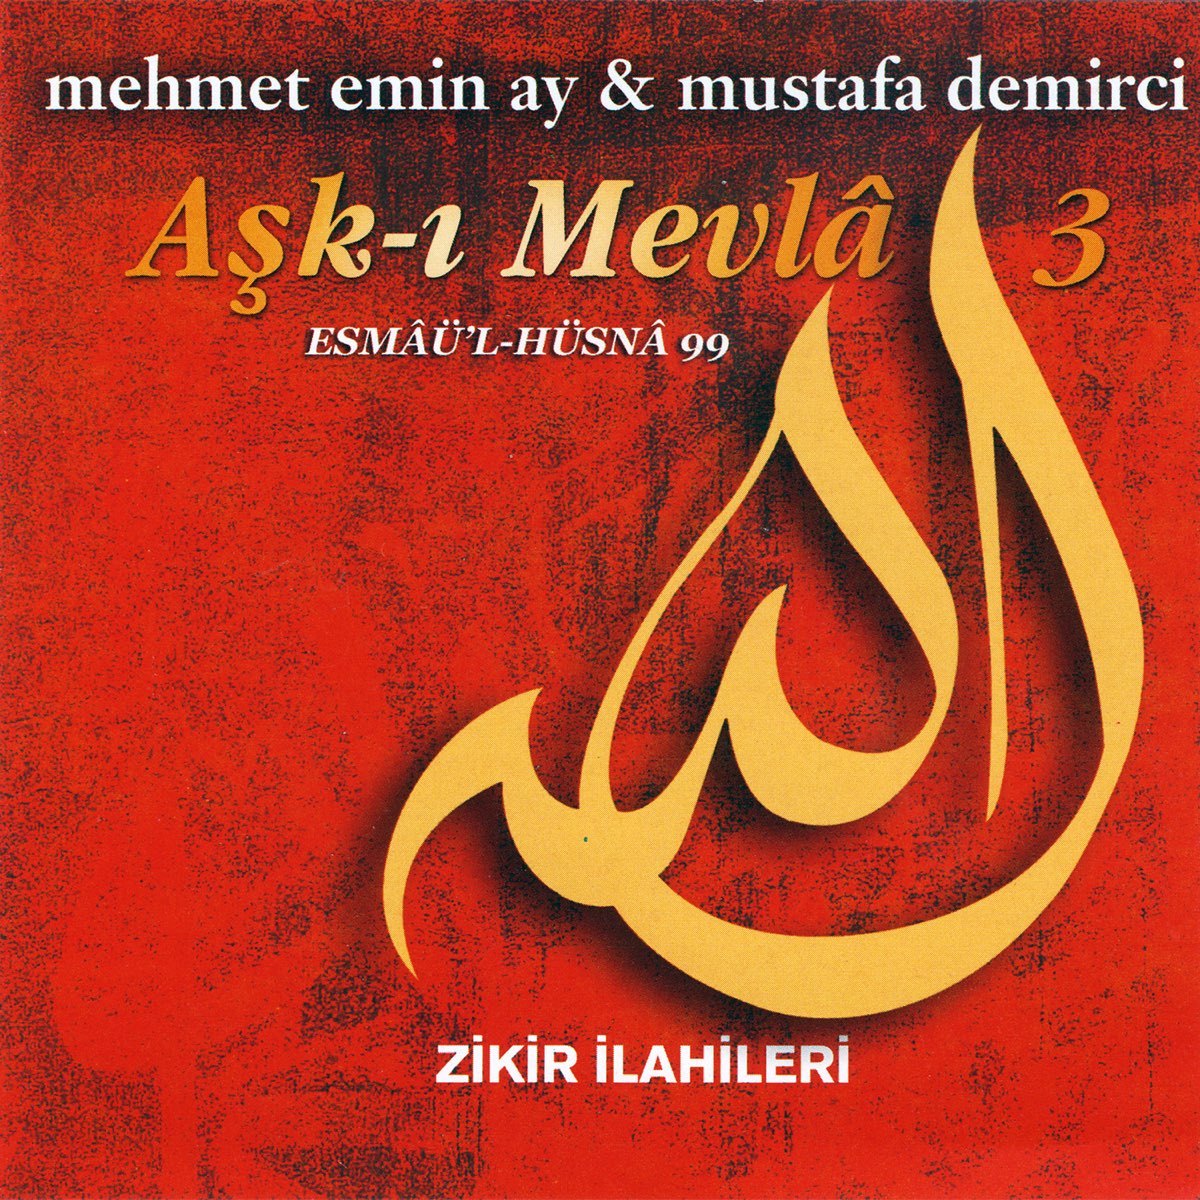 ‎Aşk-ı Mevla 3 / Zikir İlahileri , Esmaü'l Hüsna'99 by Mehmet Emin Ay